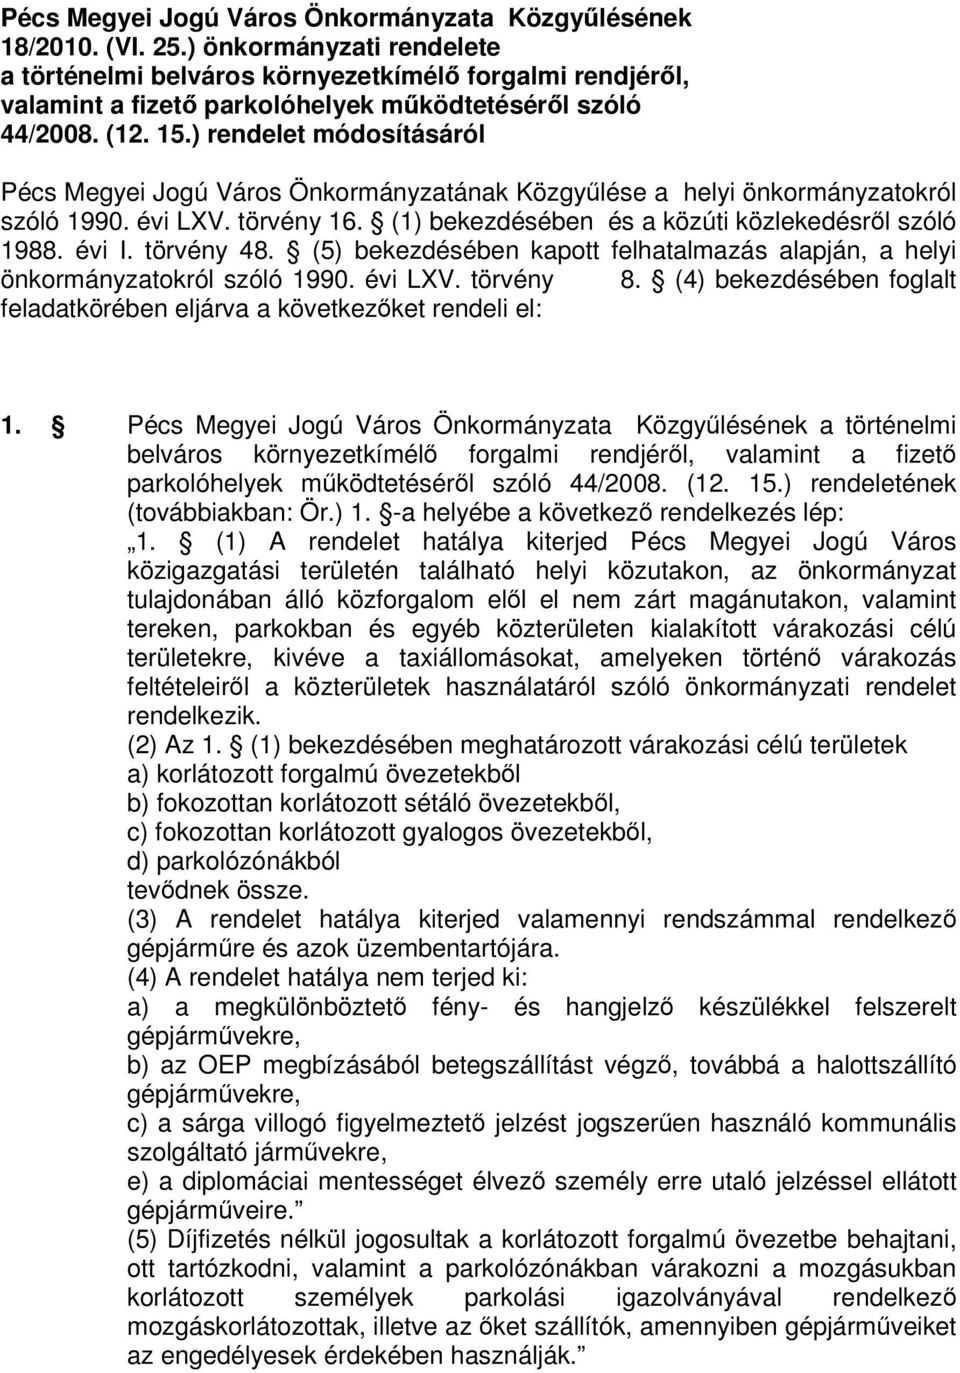 ) rendelet módosításáról Pécs Megyei Jogú Város Önkormányzatának Közgyűlése a helyi önkormányzatokról szóló 1990. évi LXV. törvény 16. (1) bekezdésében és a közúti közlekedésről szóló 1988. évi I.